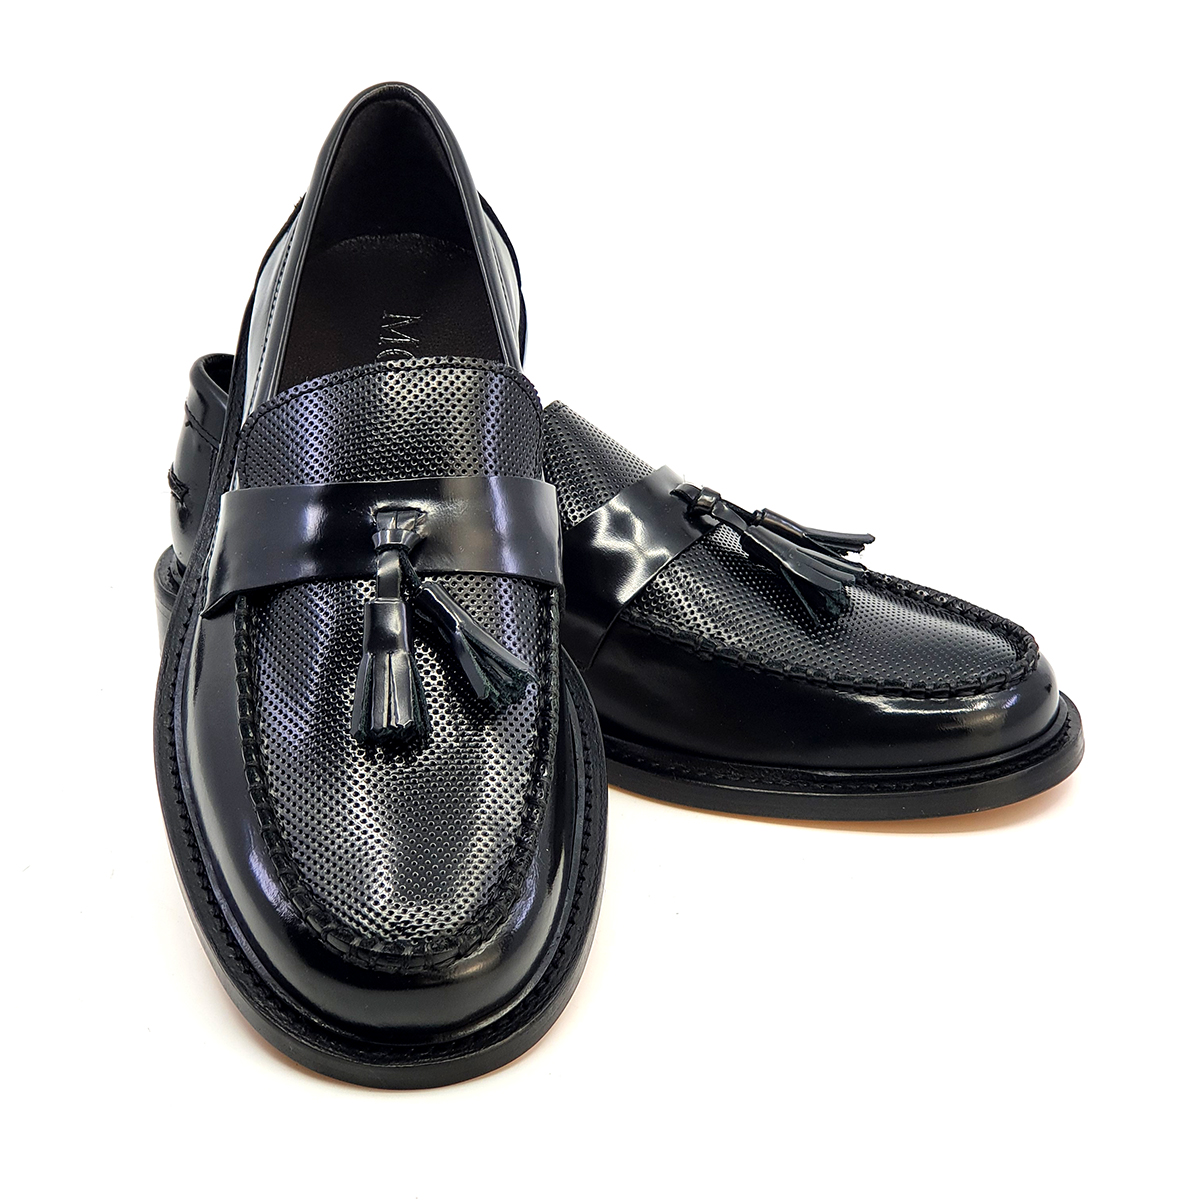 The Prince Teabag – Black Tassel Loafers – Mod Shoes